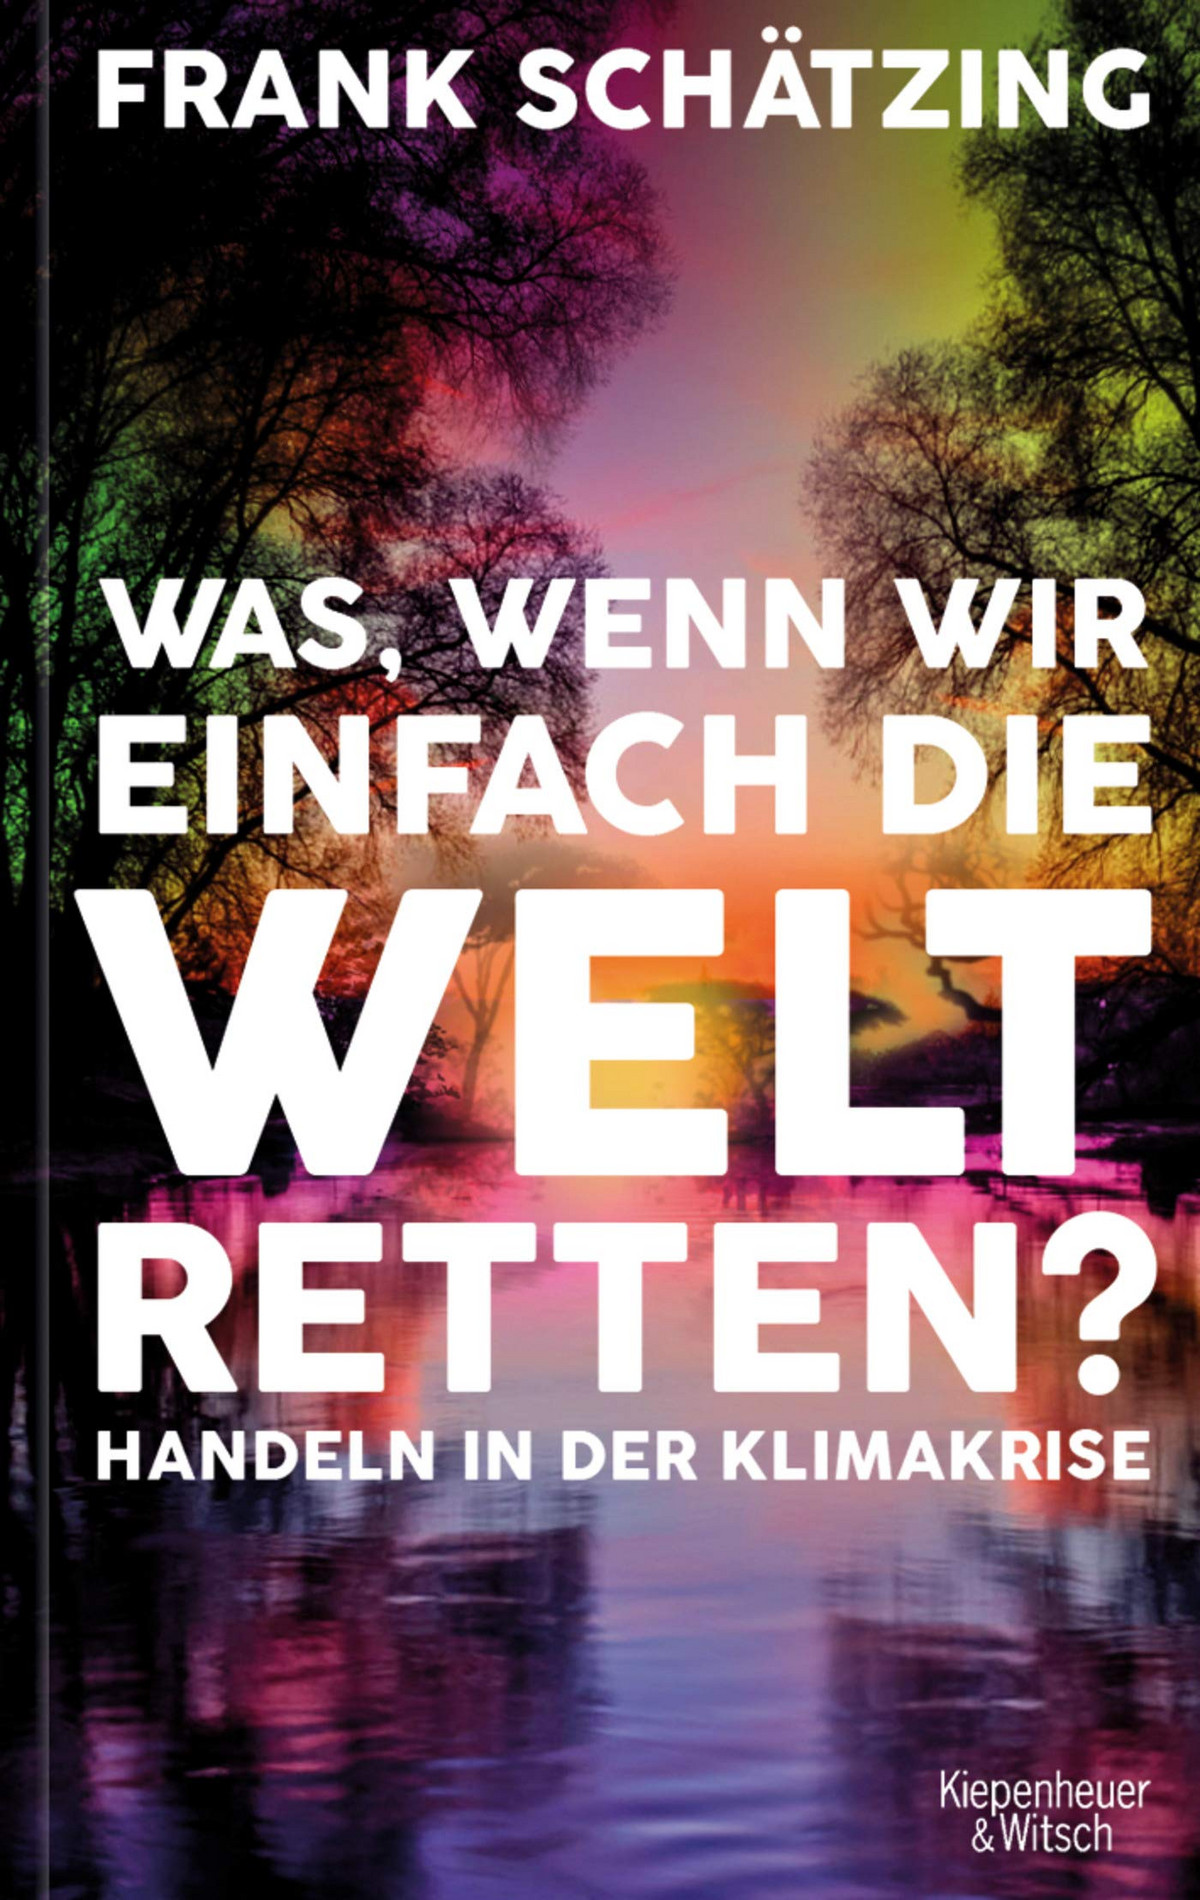 Frank Schätzing: Was, wenn wir einfach die Welt retten? (Hardcover, 2021, Kiepenheuer & Witsch GmbH)